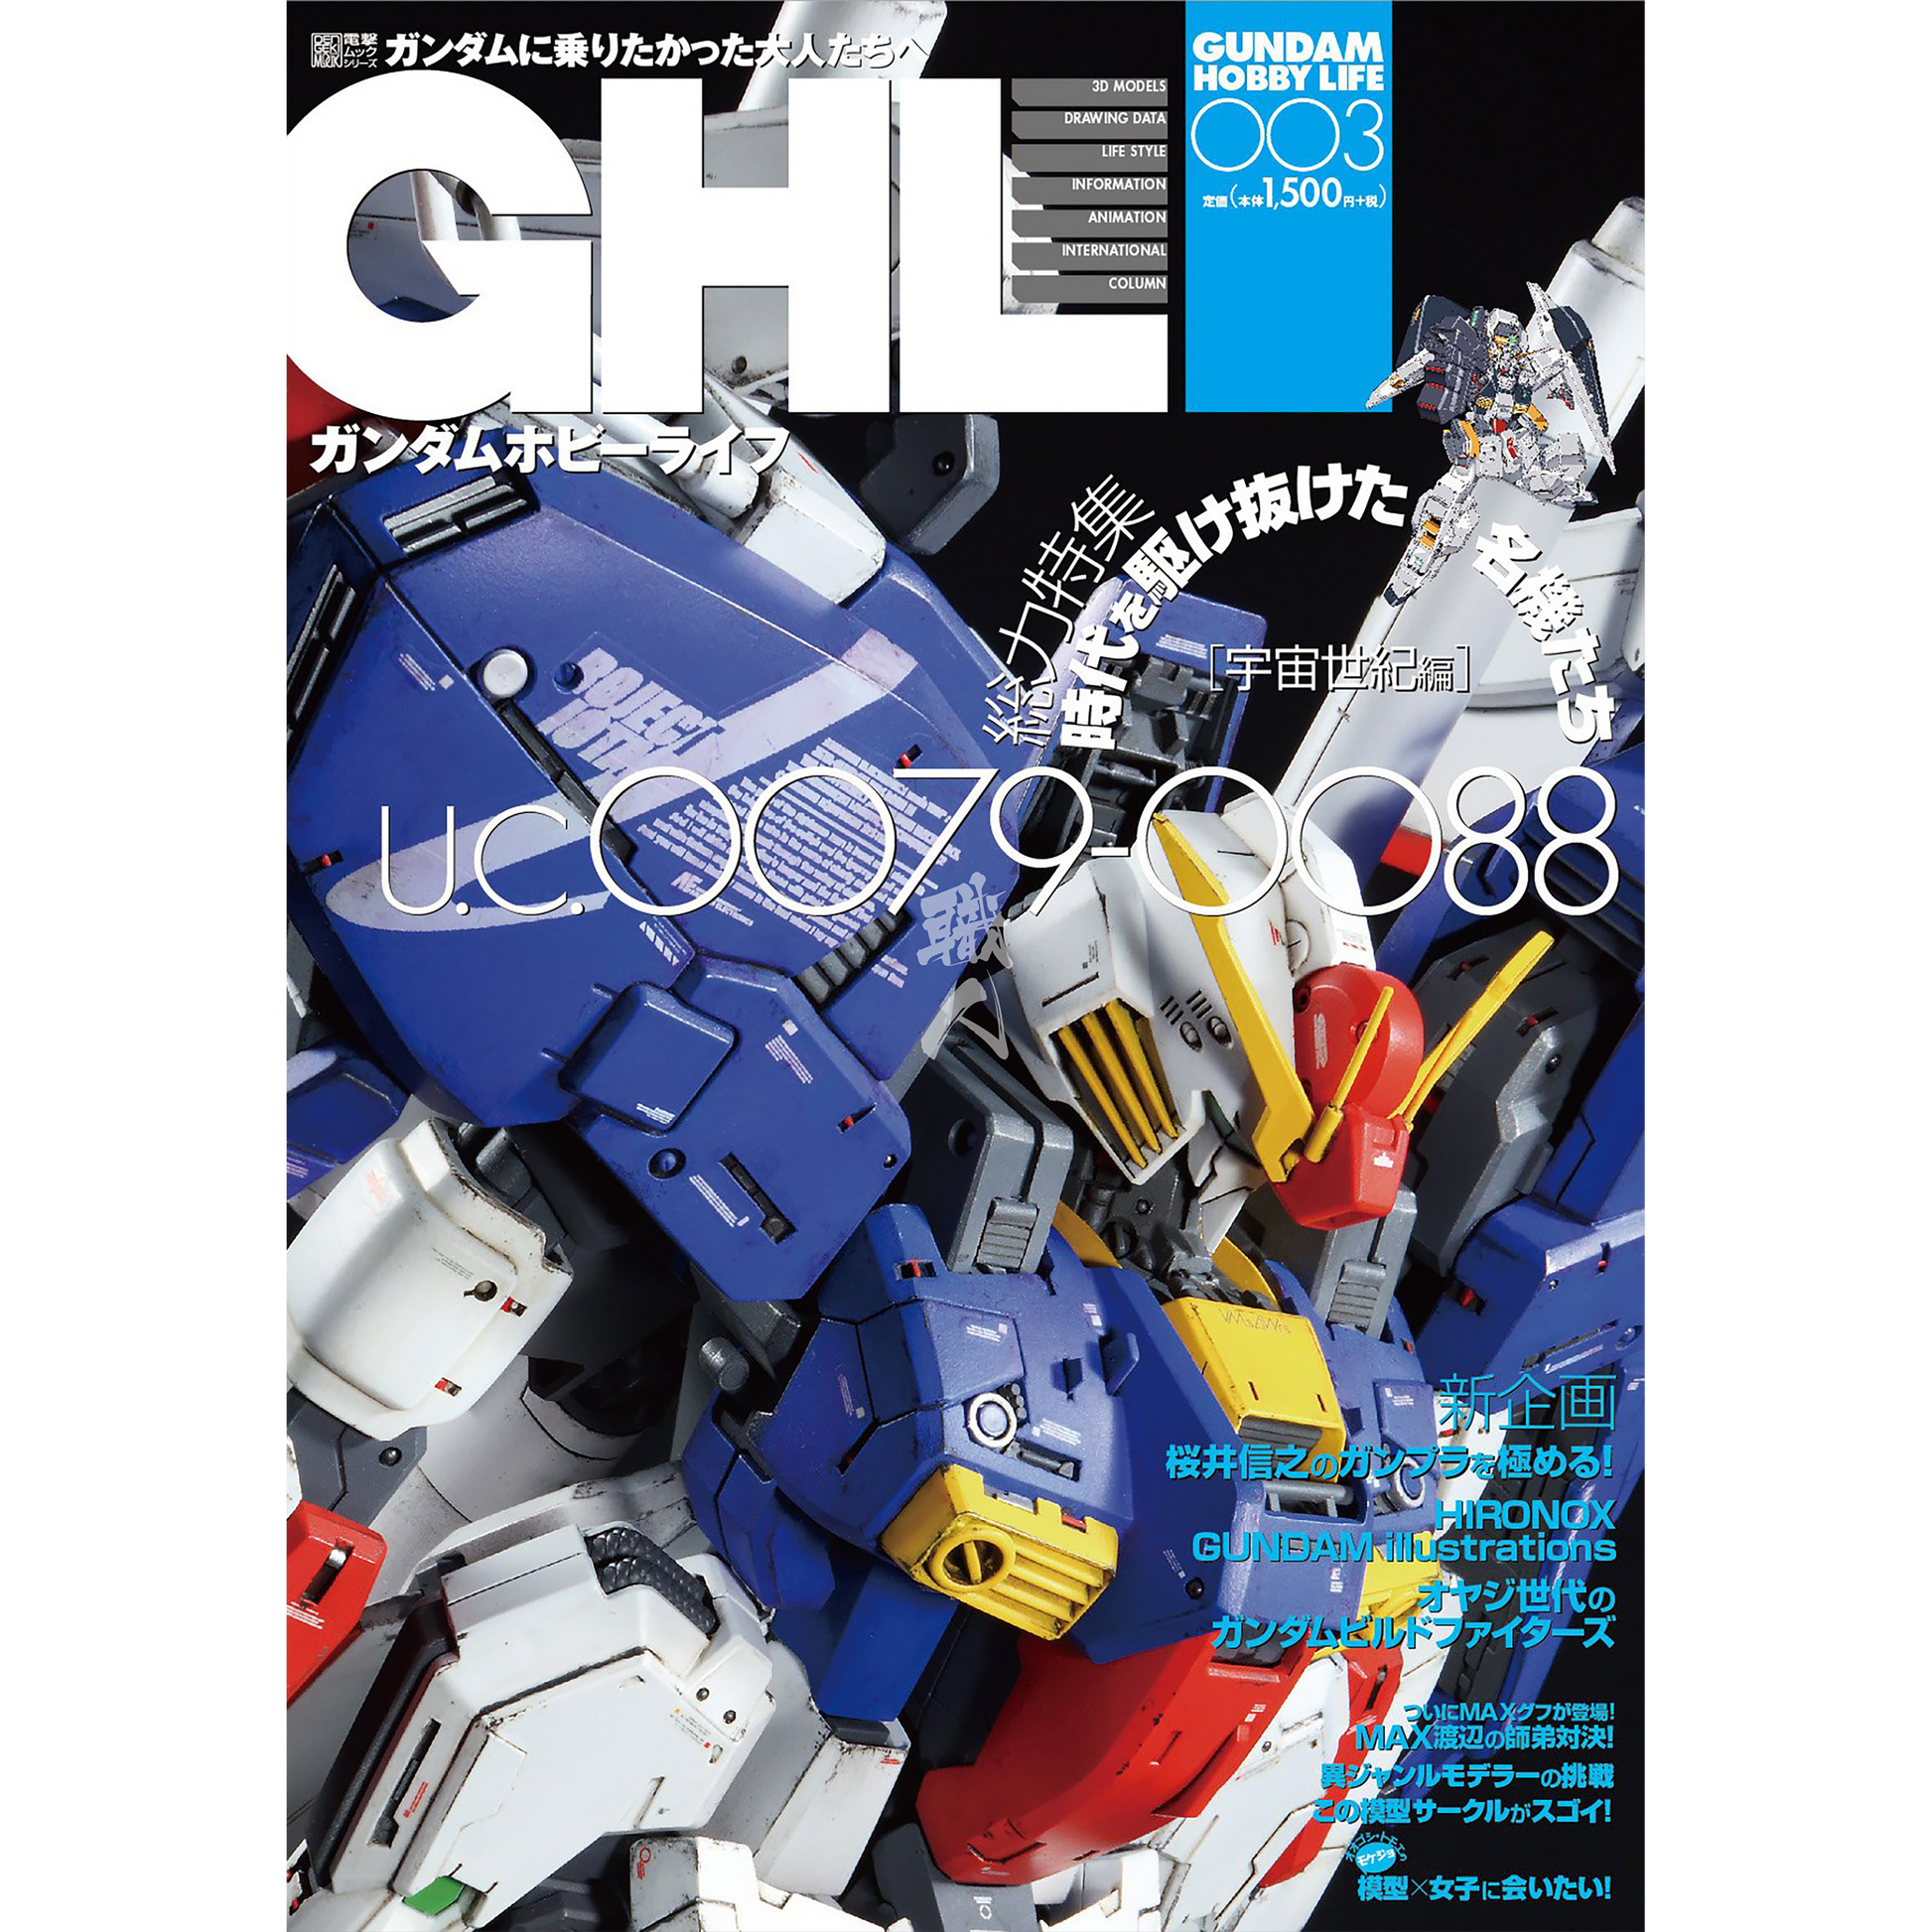 ASCII Media Works - Gundam Hobby Life Issue 003 - ShokuninGunpla